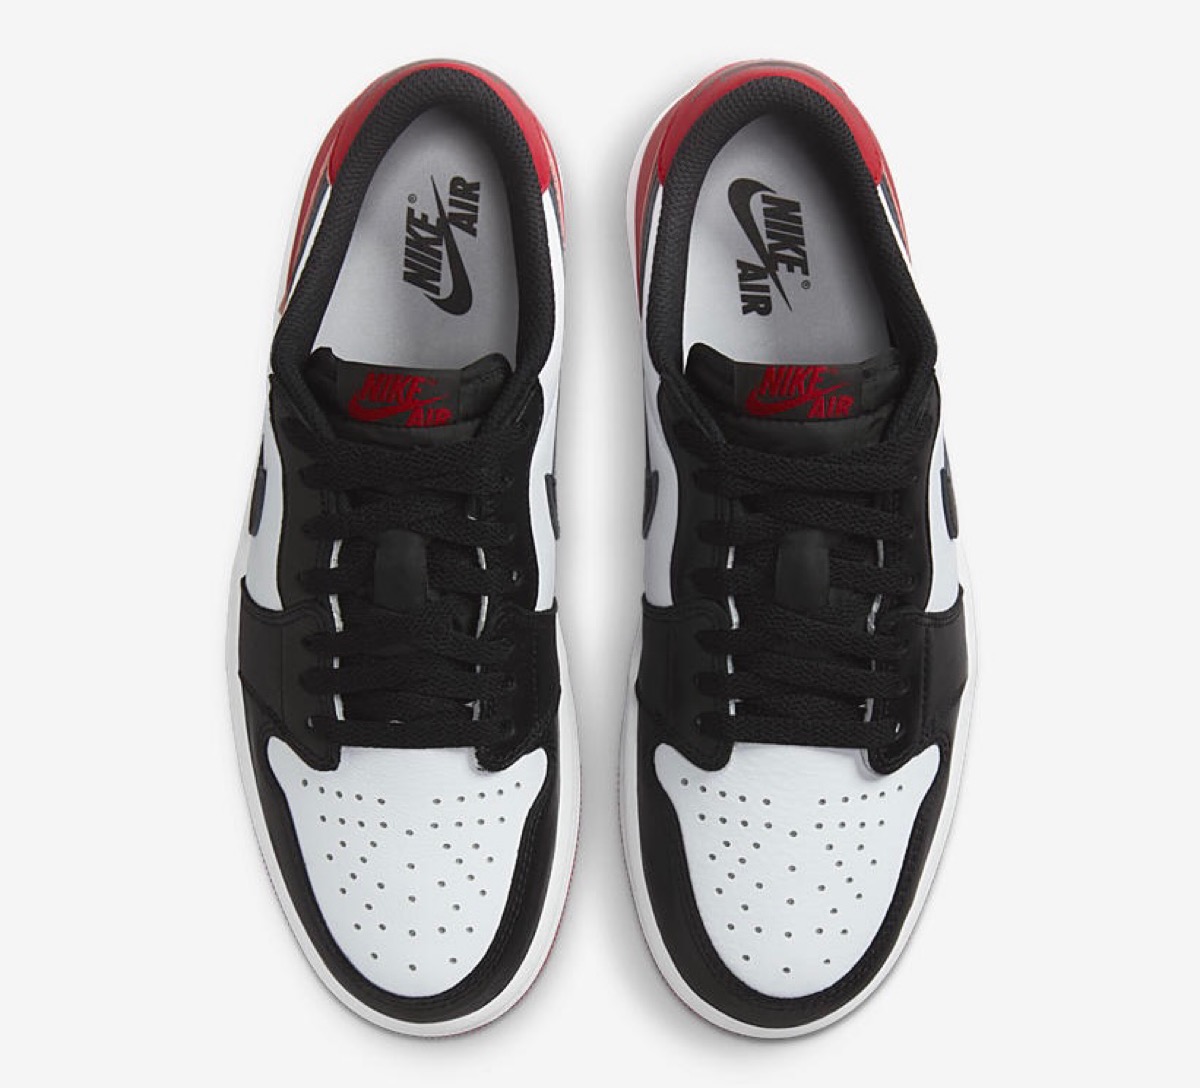 通称“つま黒” Nike Air Jordan 1 Low OG “Black Toe”が国内7月28日に 